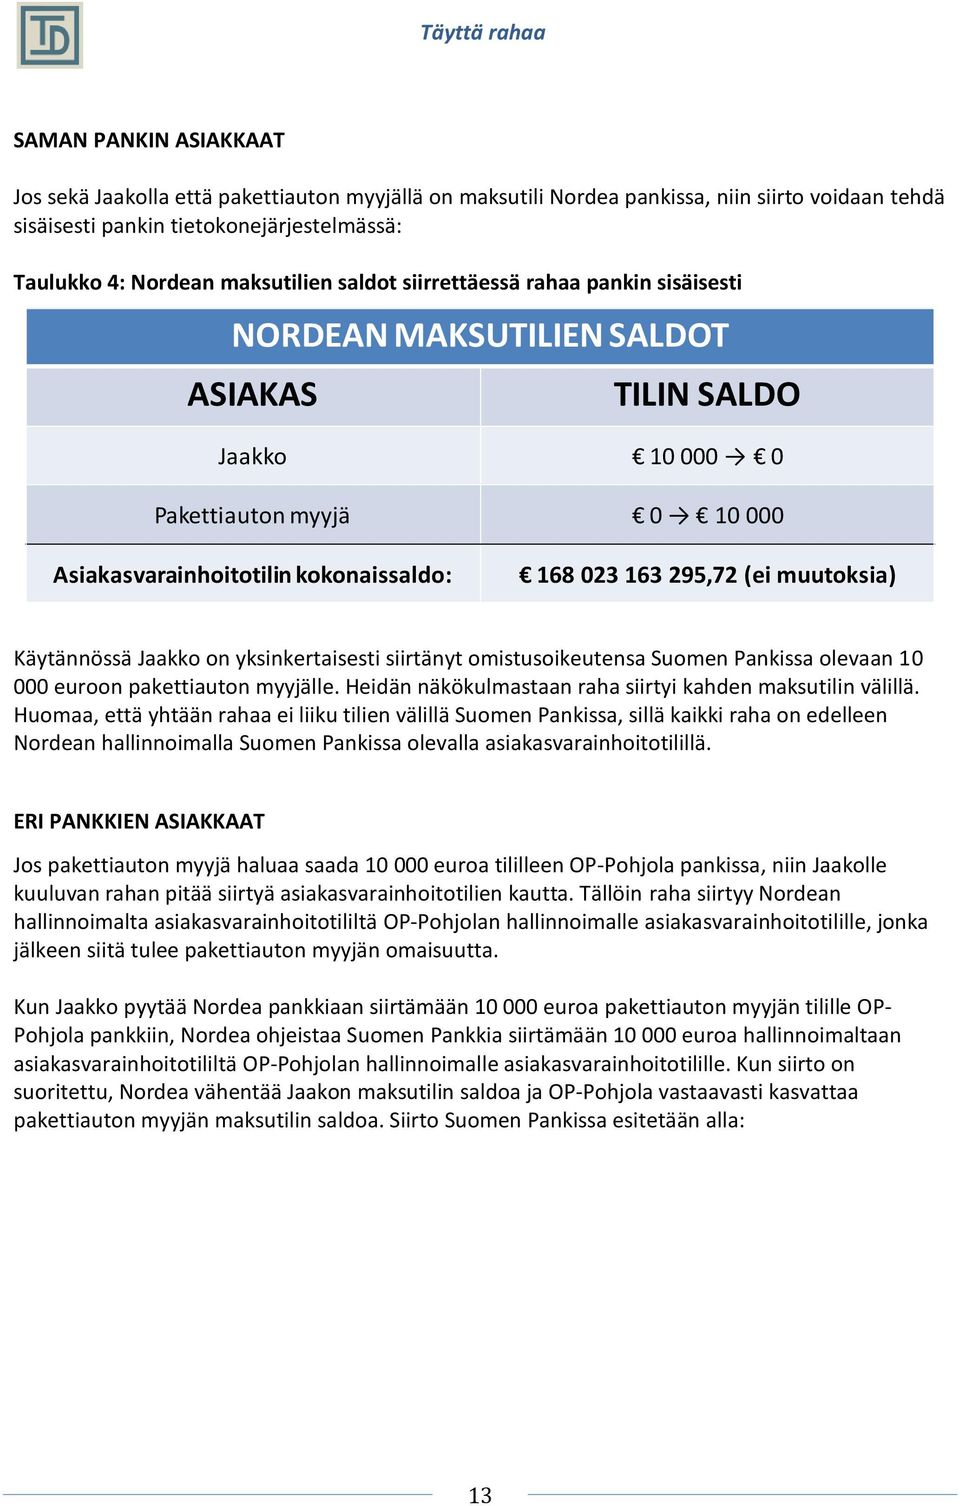 muutoksia) Käytännössä Jaakko on yksinkertaisesti siirtänyt omistusoikeutensa Suomen Pankissa olevaan 10 000 euroon pakettiauton myyjälle. Heidän näkökulmastaan raha siirtyi kahden maksutilin välillä.